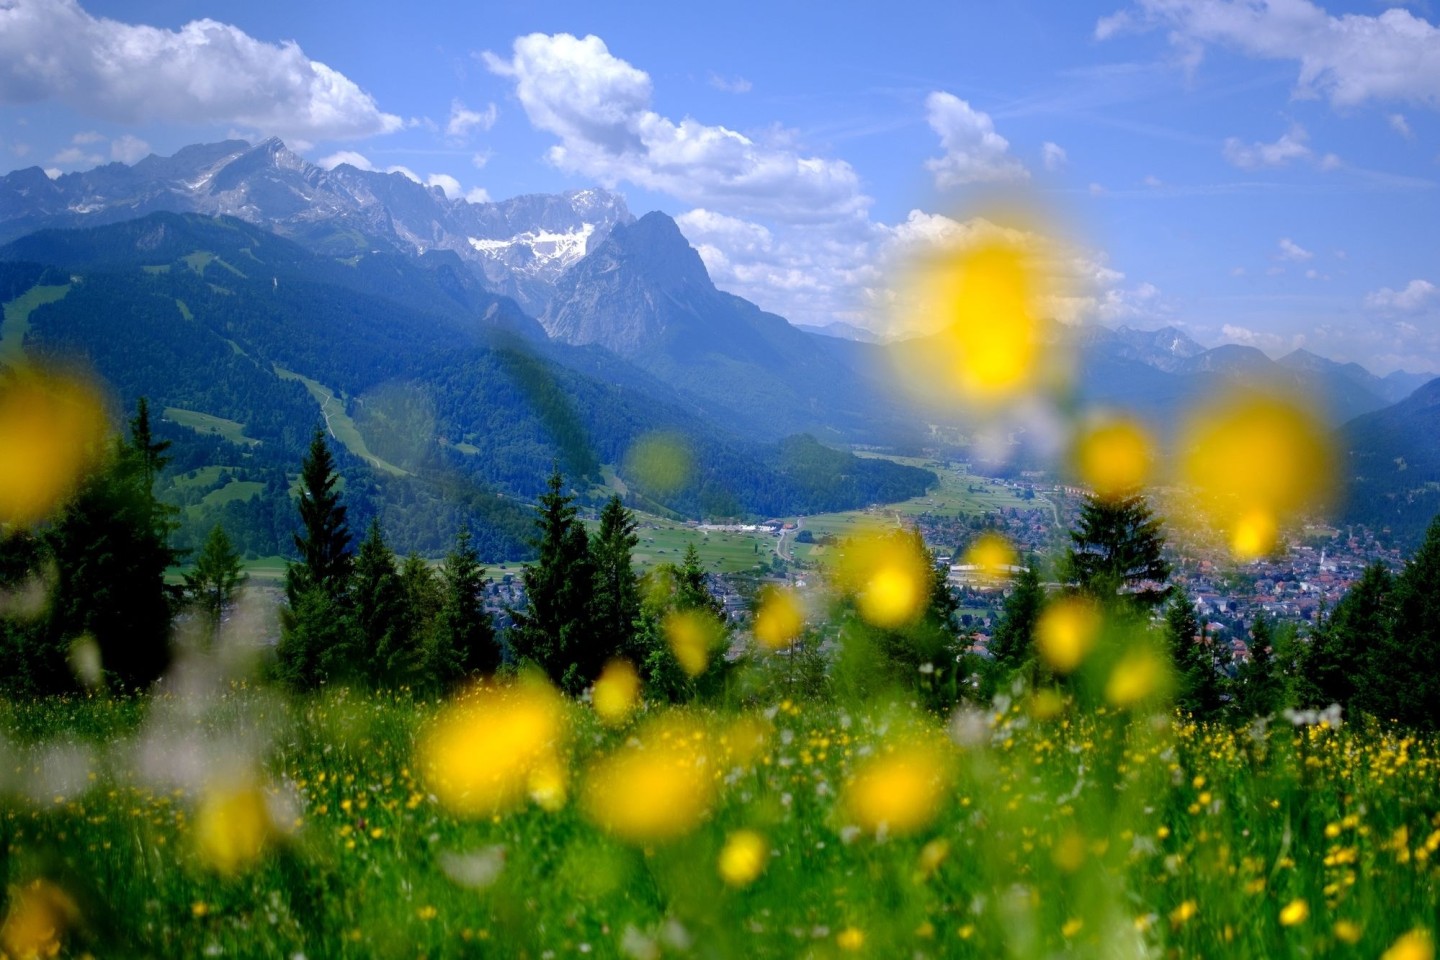 Sommer in den Bergen: Blumen blühen auf einer Wiese am Wank in Bayern, im Hintergrund sind die Gipfel des Wettersteins mit der Zugspitze zu sehen.